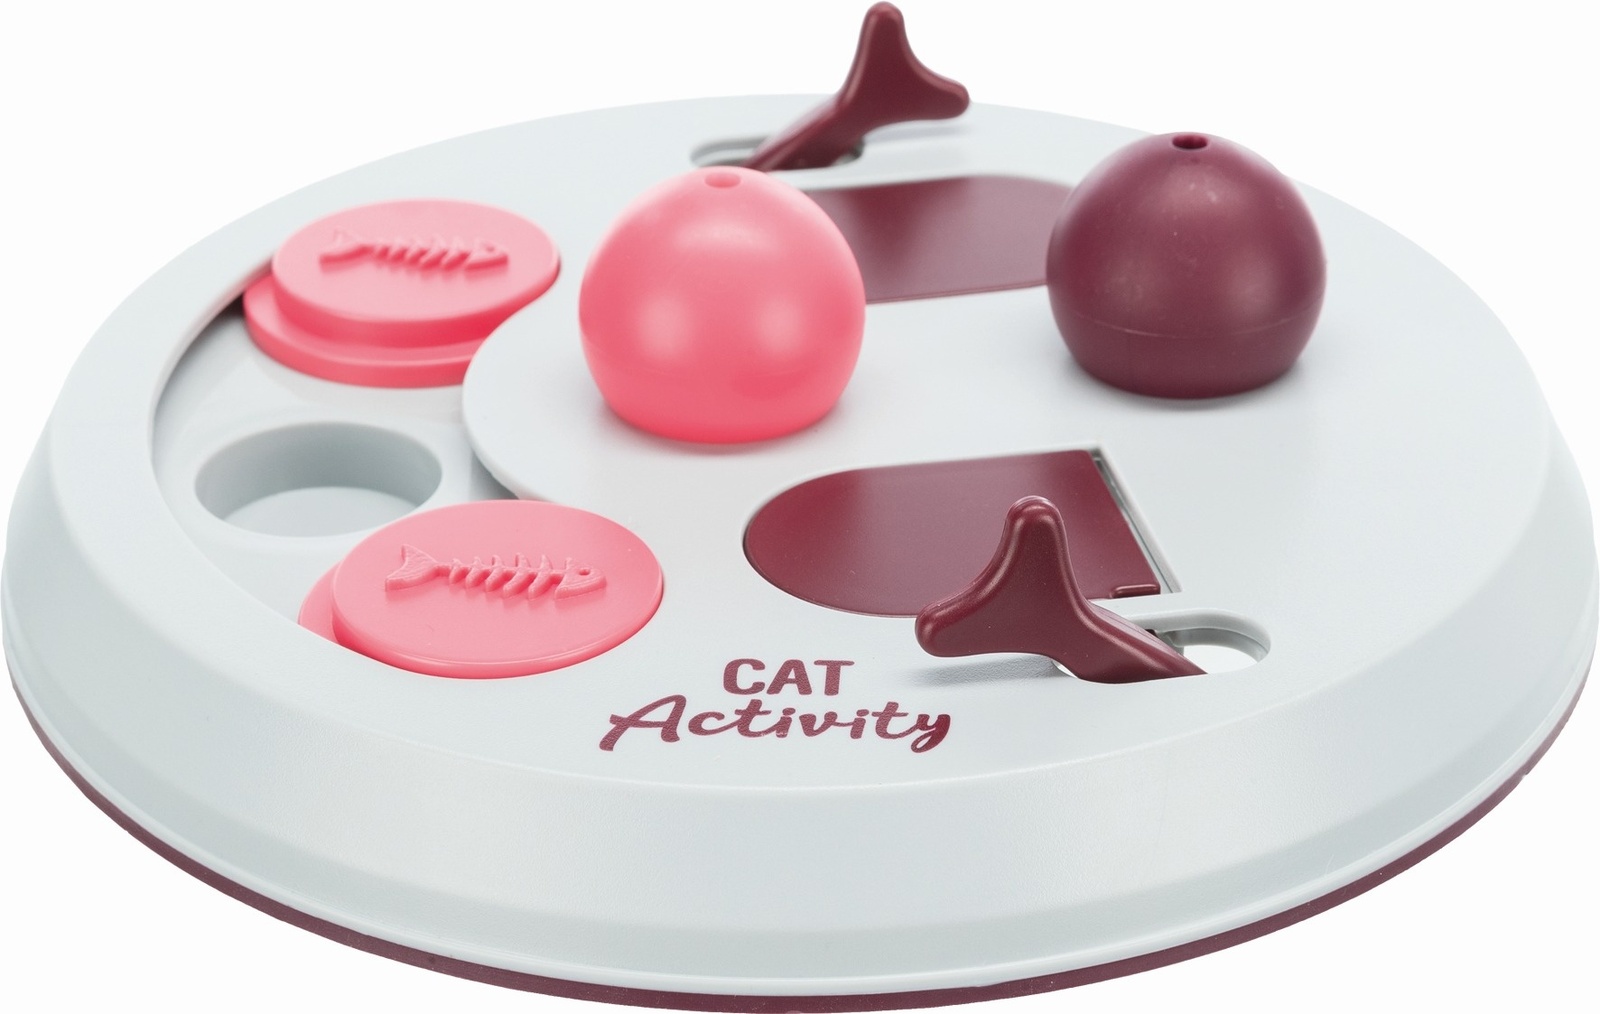 Trixie Trixie развивающая игра, ягодный, розовый, светло-серый (362 г) trixie кликер с телескопической антенной cat activity